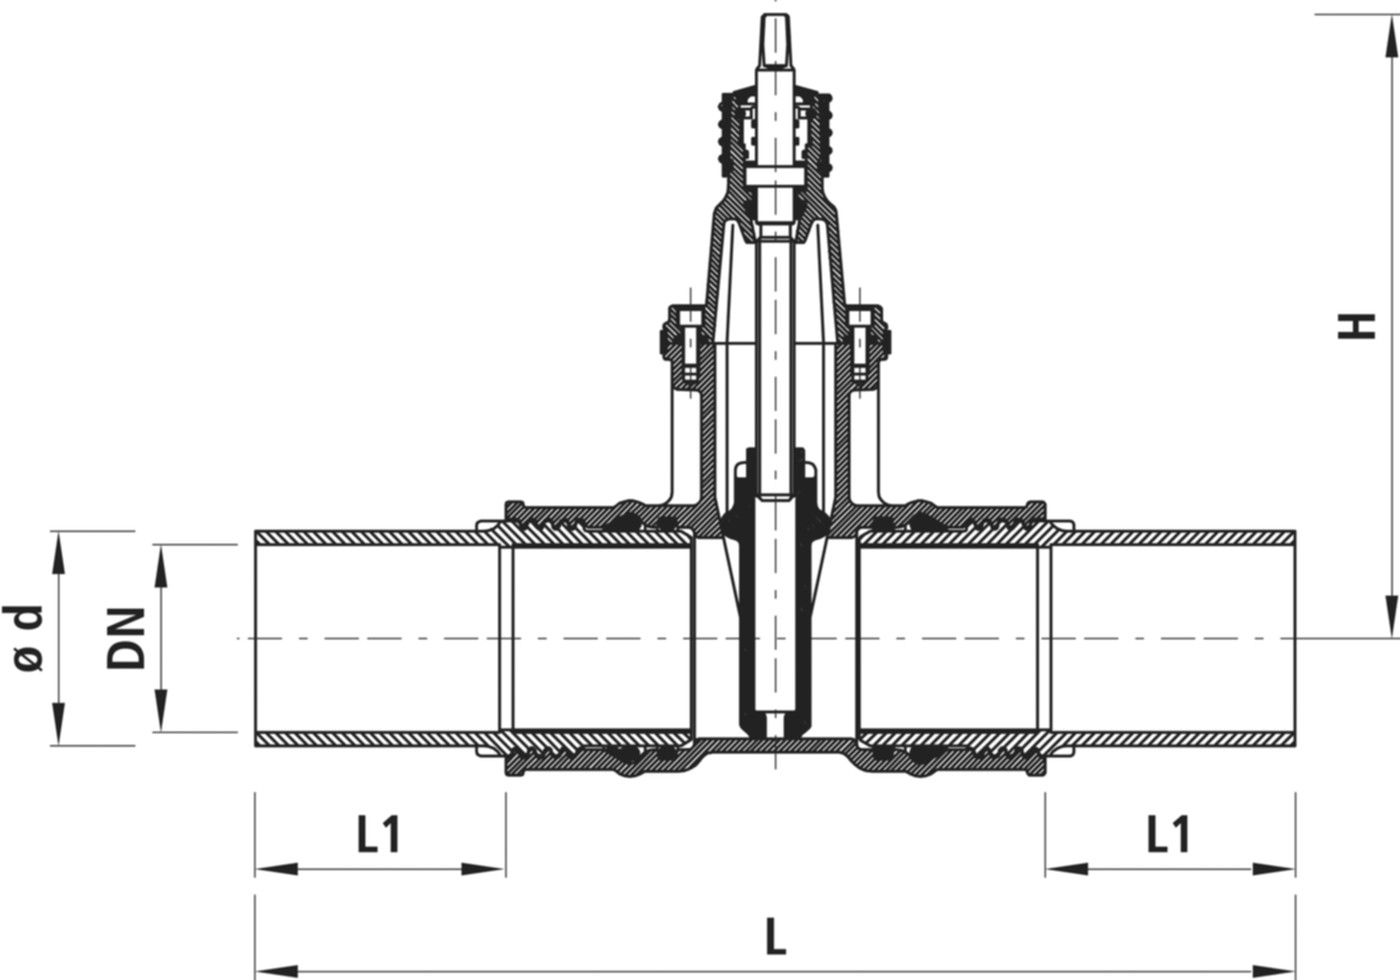 Einschweiss-Schieber für Gas 4815 DN 150 / d 160mm - Hawle Armaturen